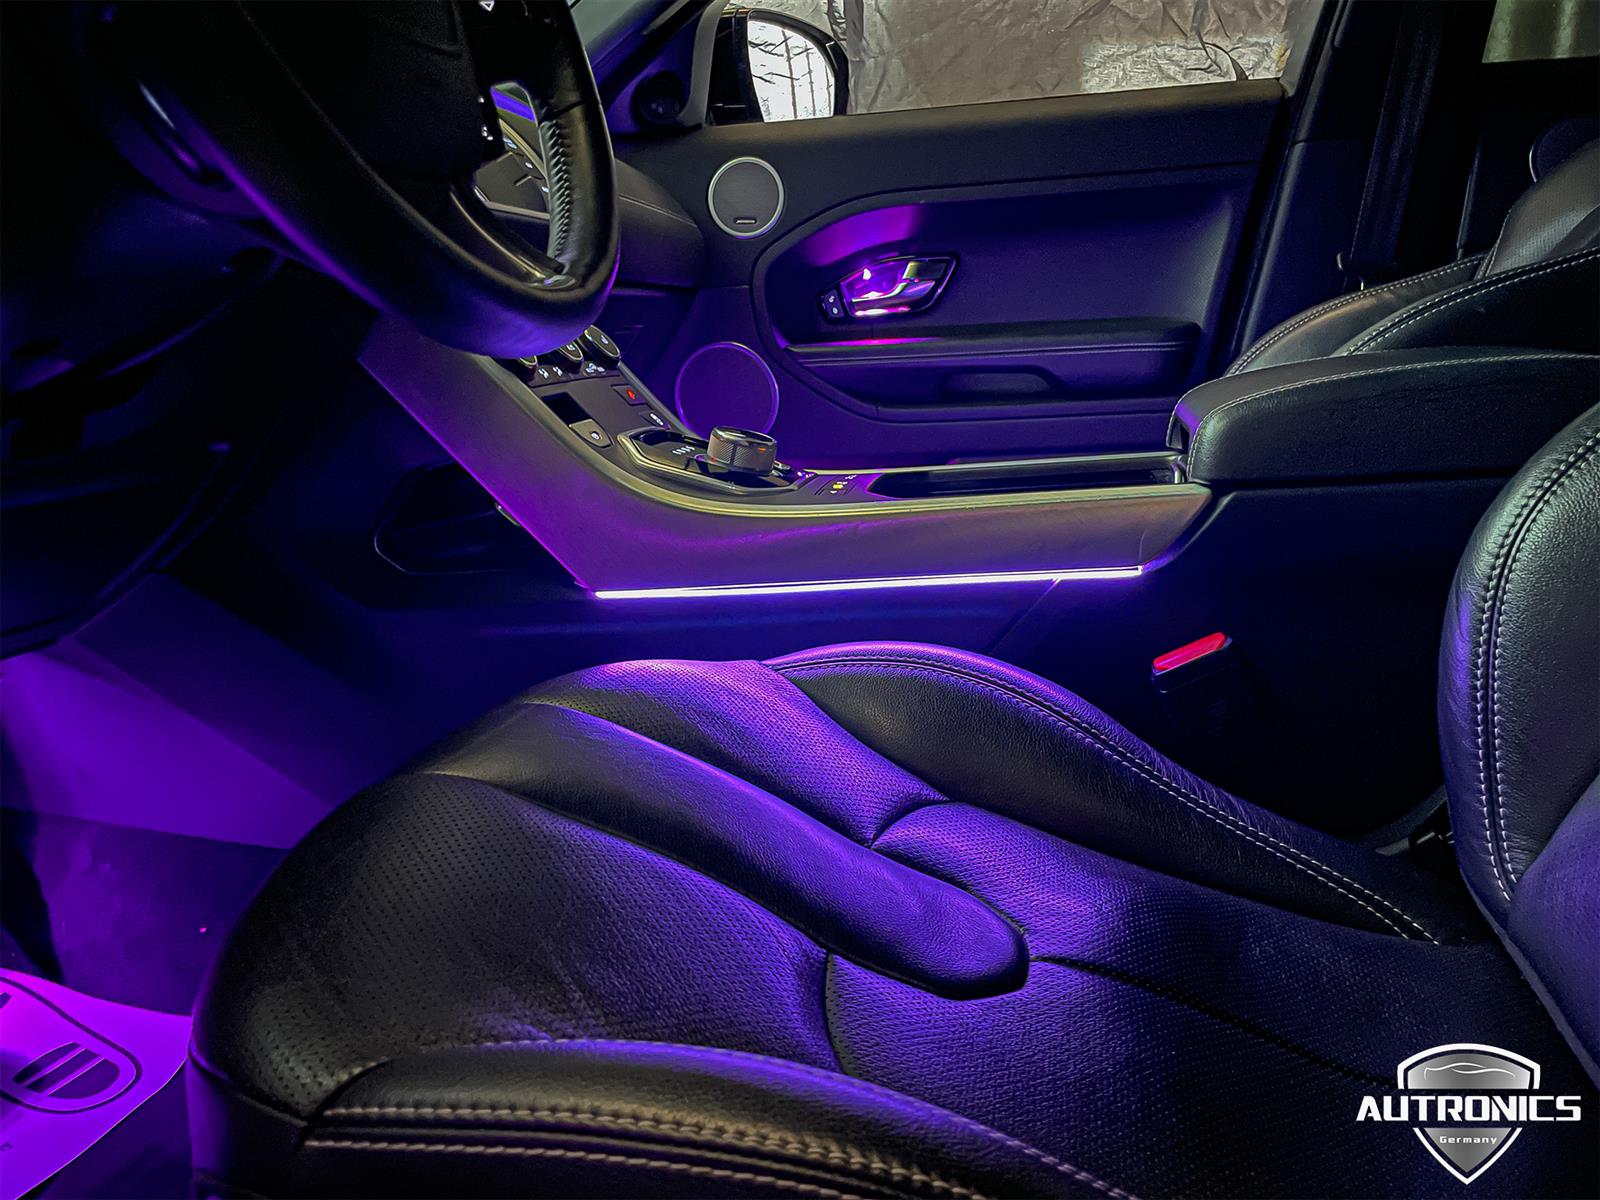 Ambientebeleuchtung Nachrüsten im Auto Innenraumbeleuchtung Beleuchtung geeignet für Range Rover Evoque - 03